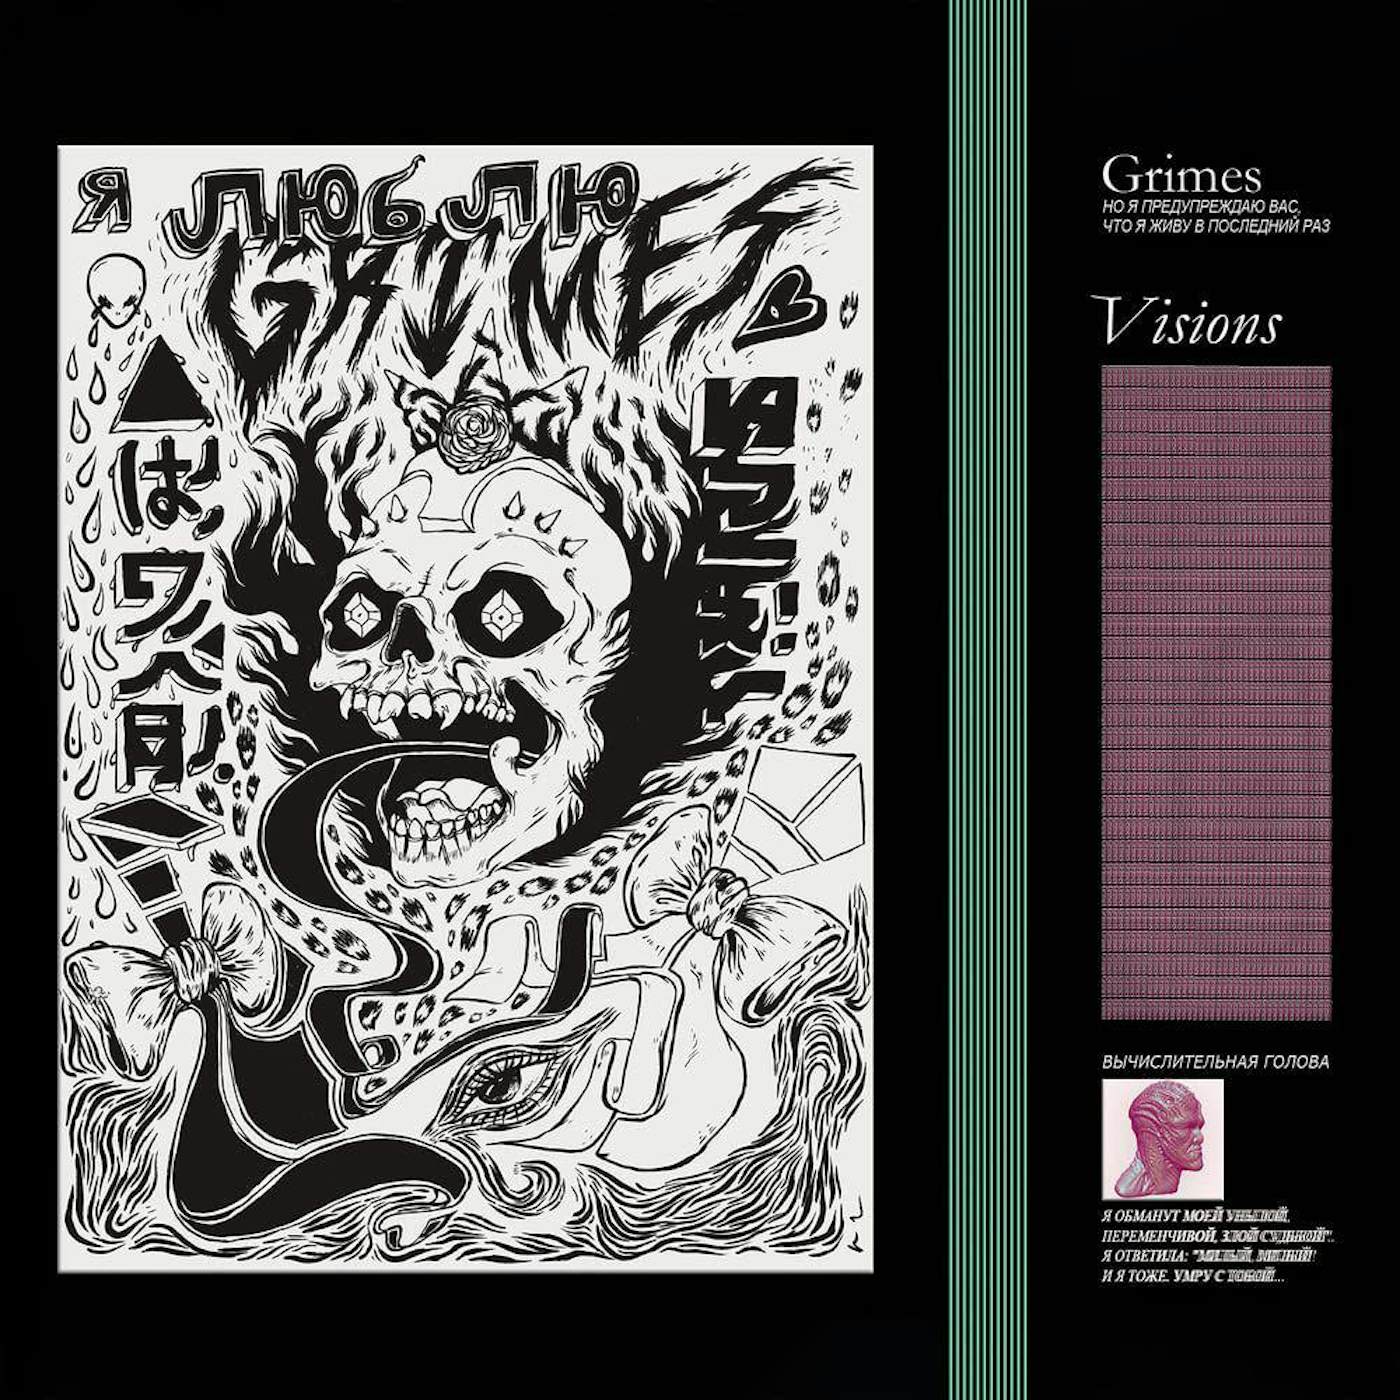 Grimes Visions Vinyl Record